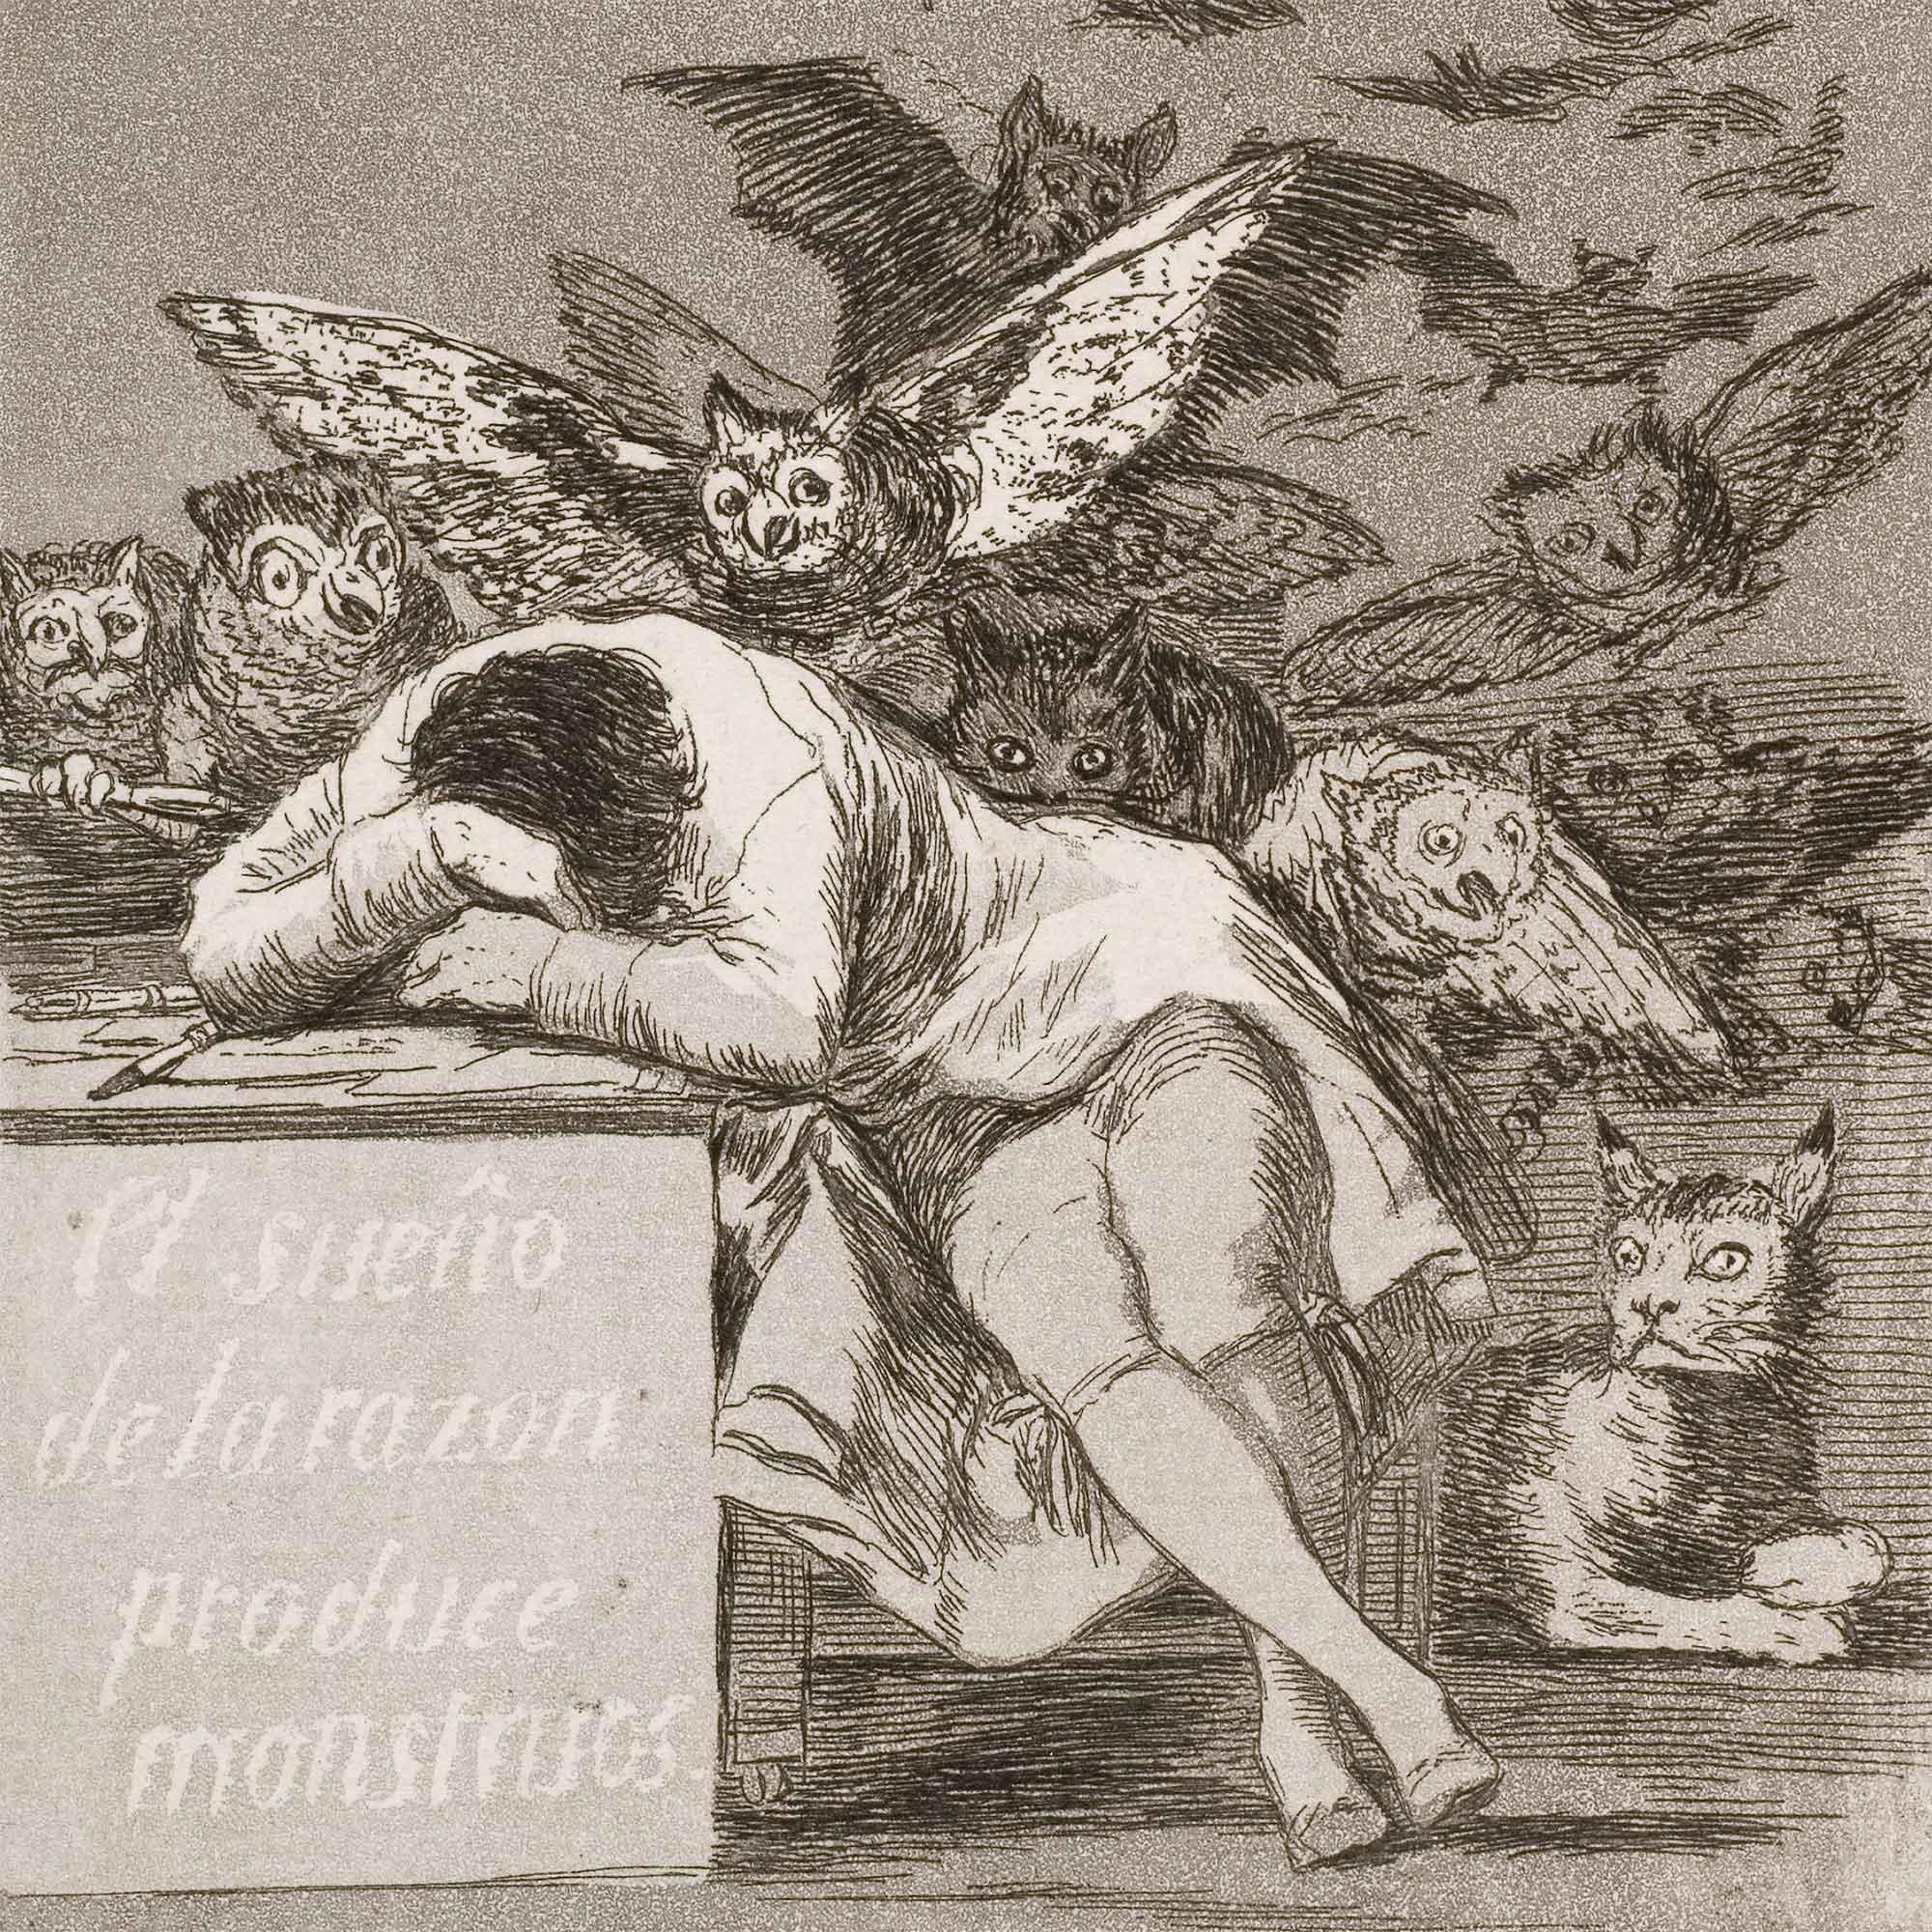 "El sueño de la razón produce monstruos" Francisco de Goya y Lucientes (1799)